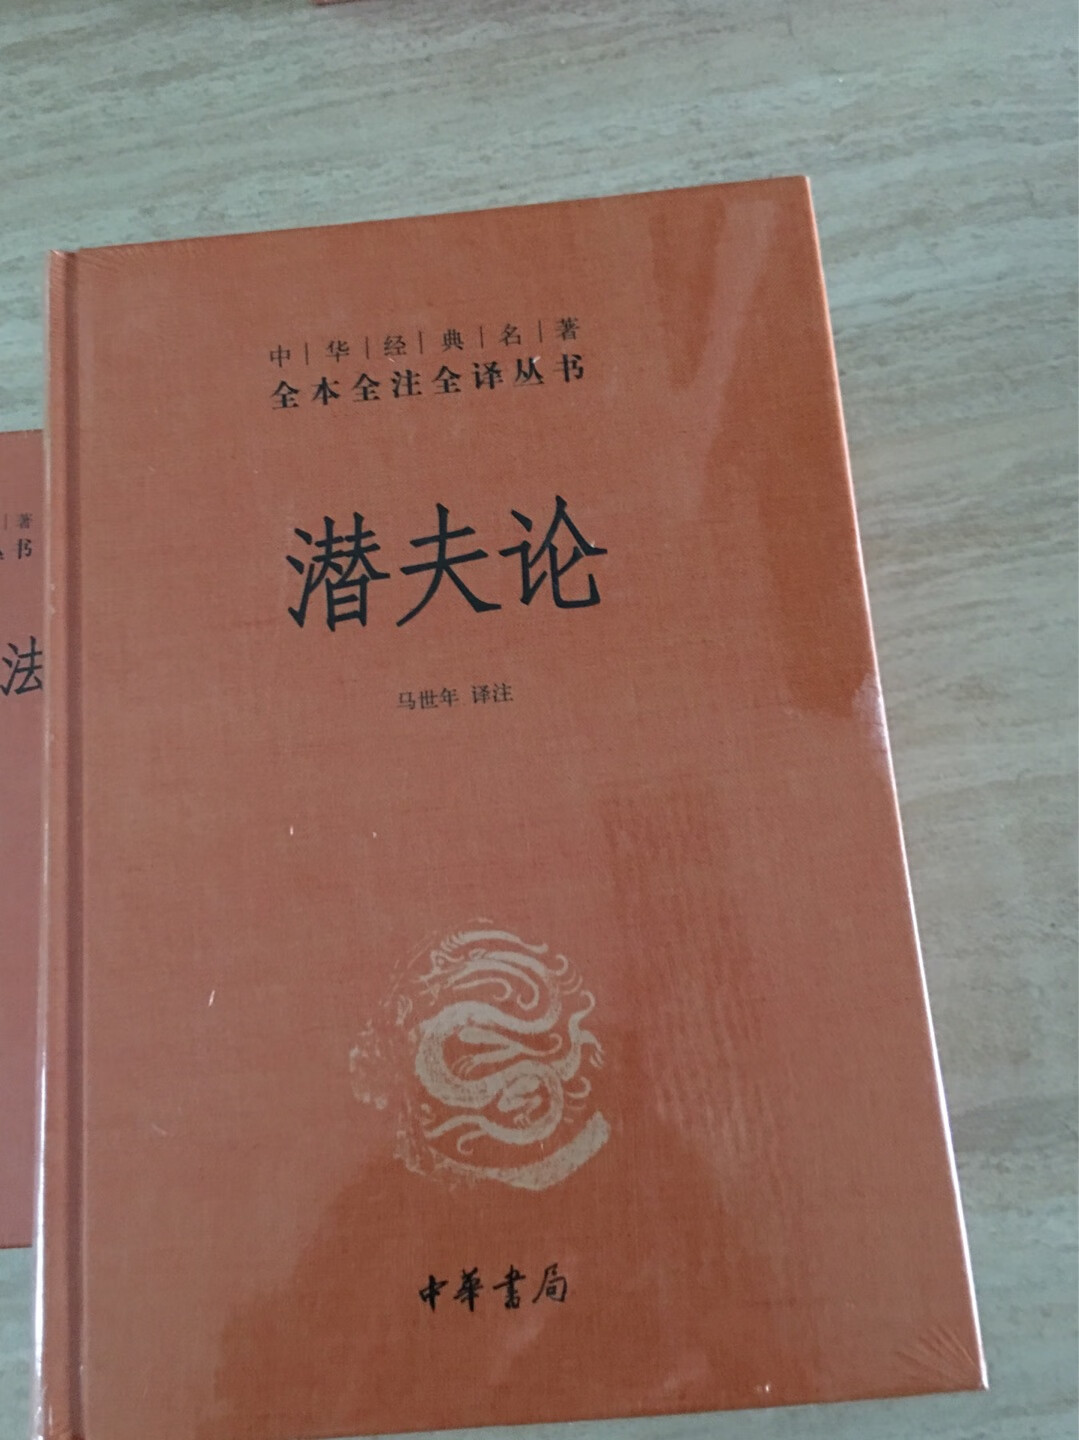 中国经典名著丛书，值得收藏，很想收全这套书，快递很给力。